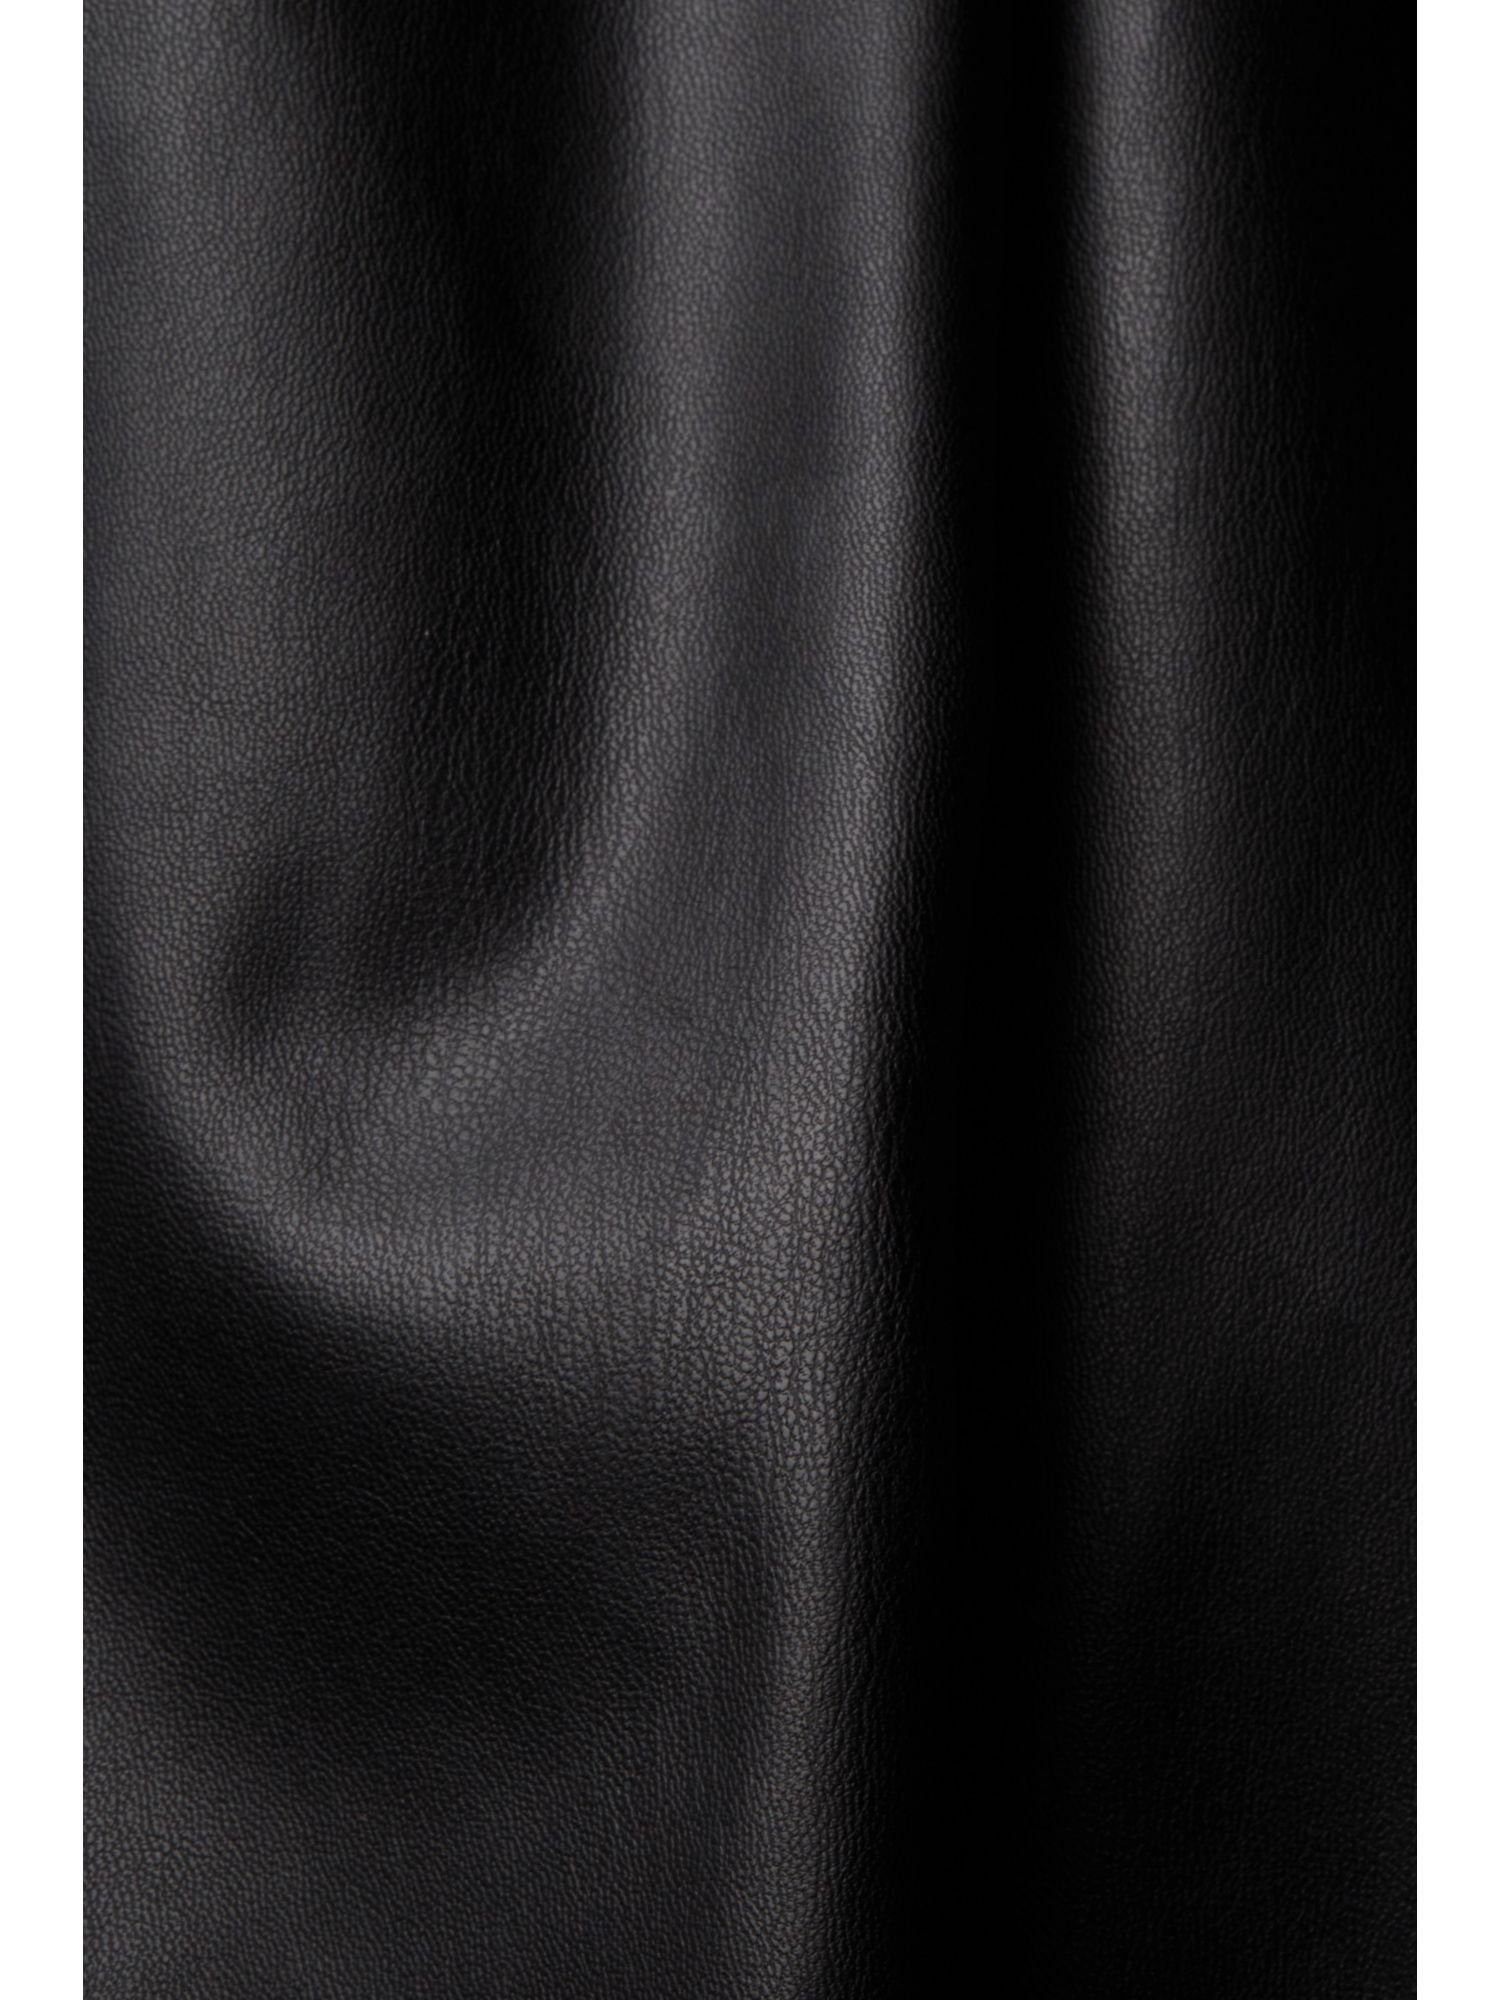 Esprit Collection 7/8-Hose Cropped-Hose BLACK in Lederoptik